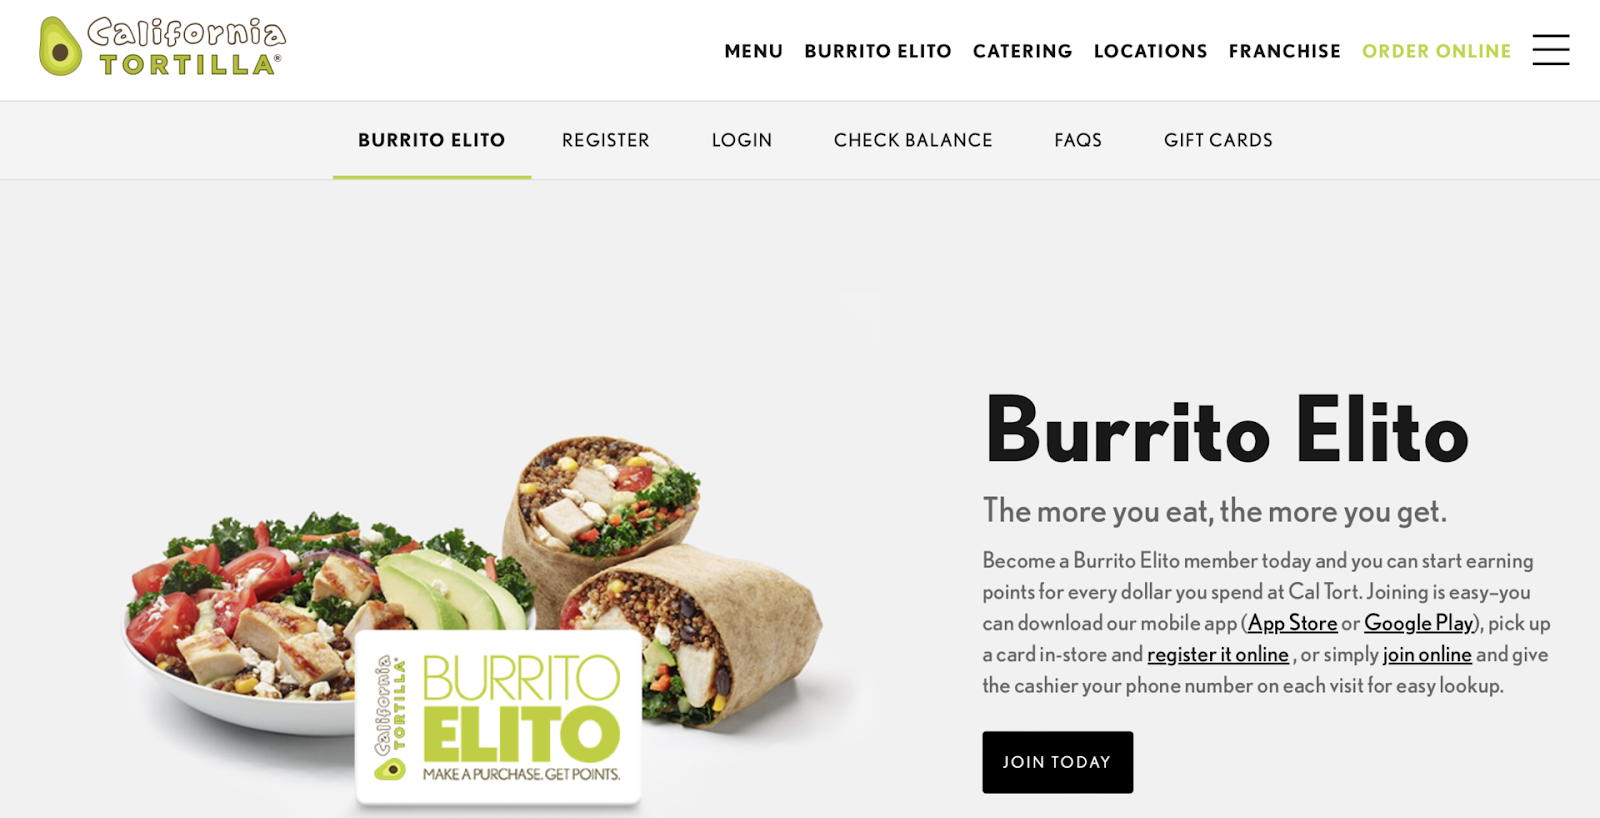 Burrito Elito loyalty campaign